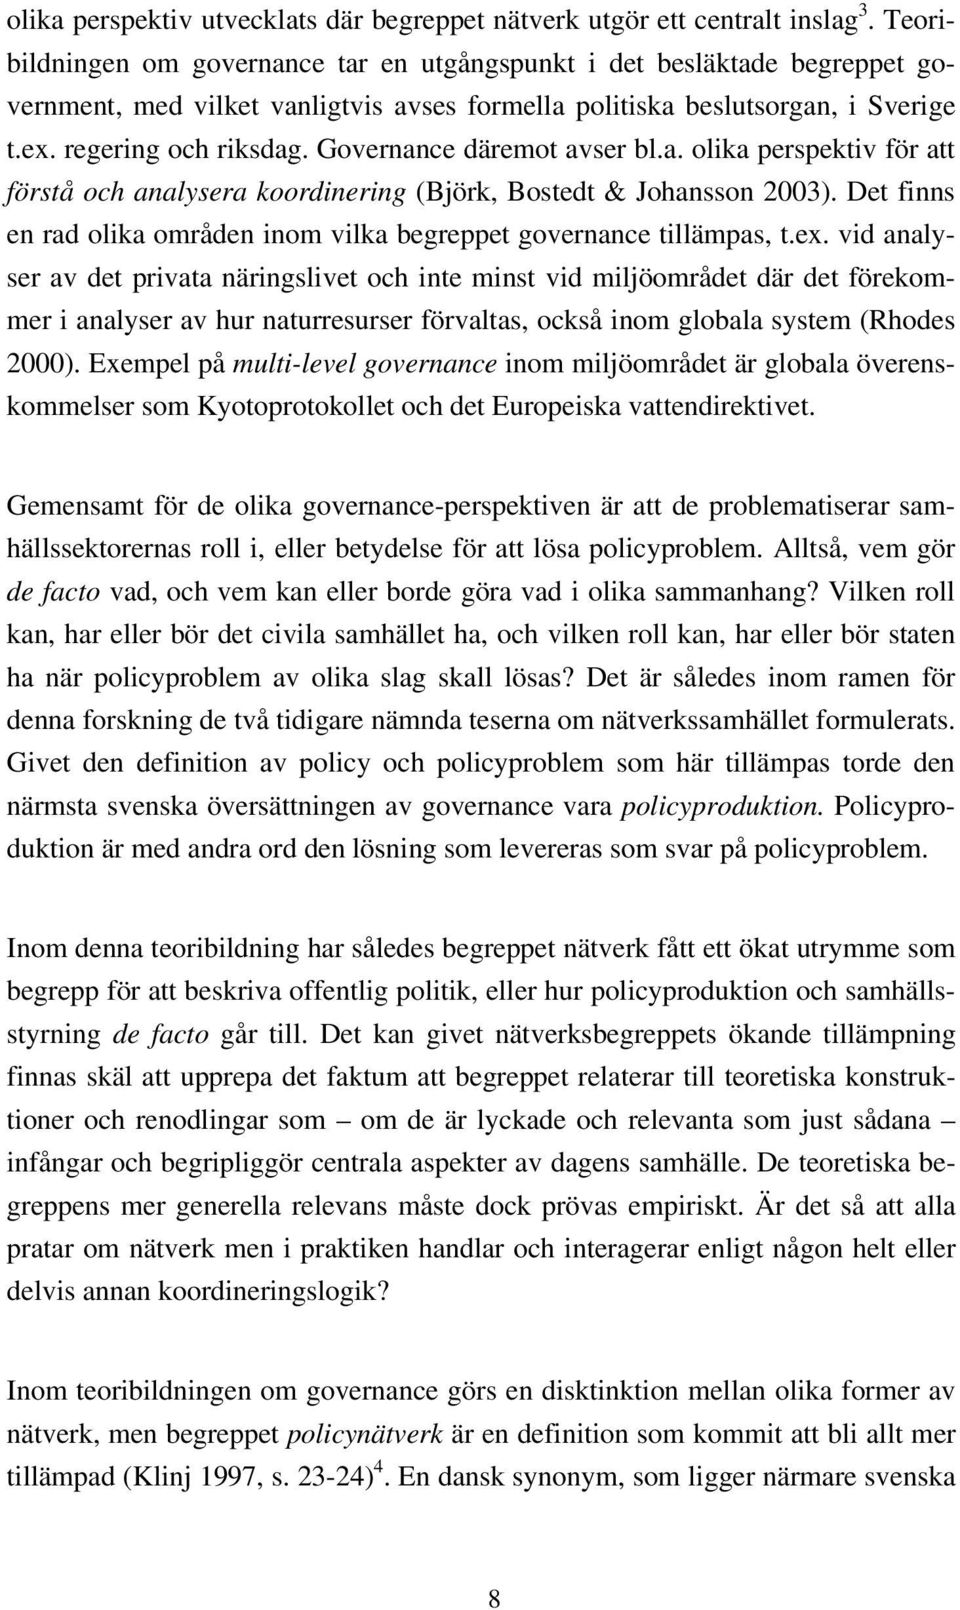 Governance däremot avser bl.a. olika perspektiv för att förstå och analysera koordinering (Björk, Bostedt & Johansson 2003).